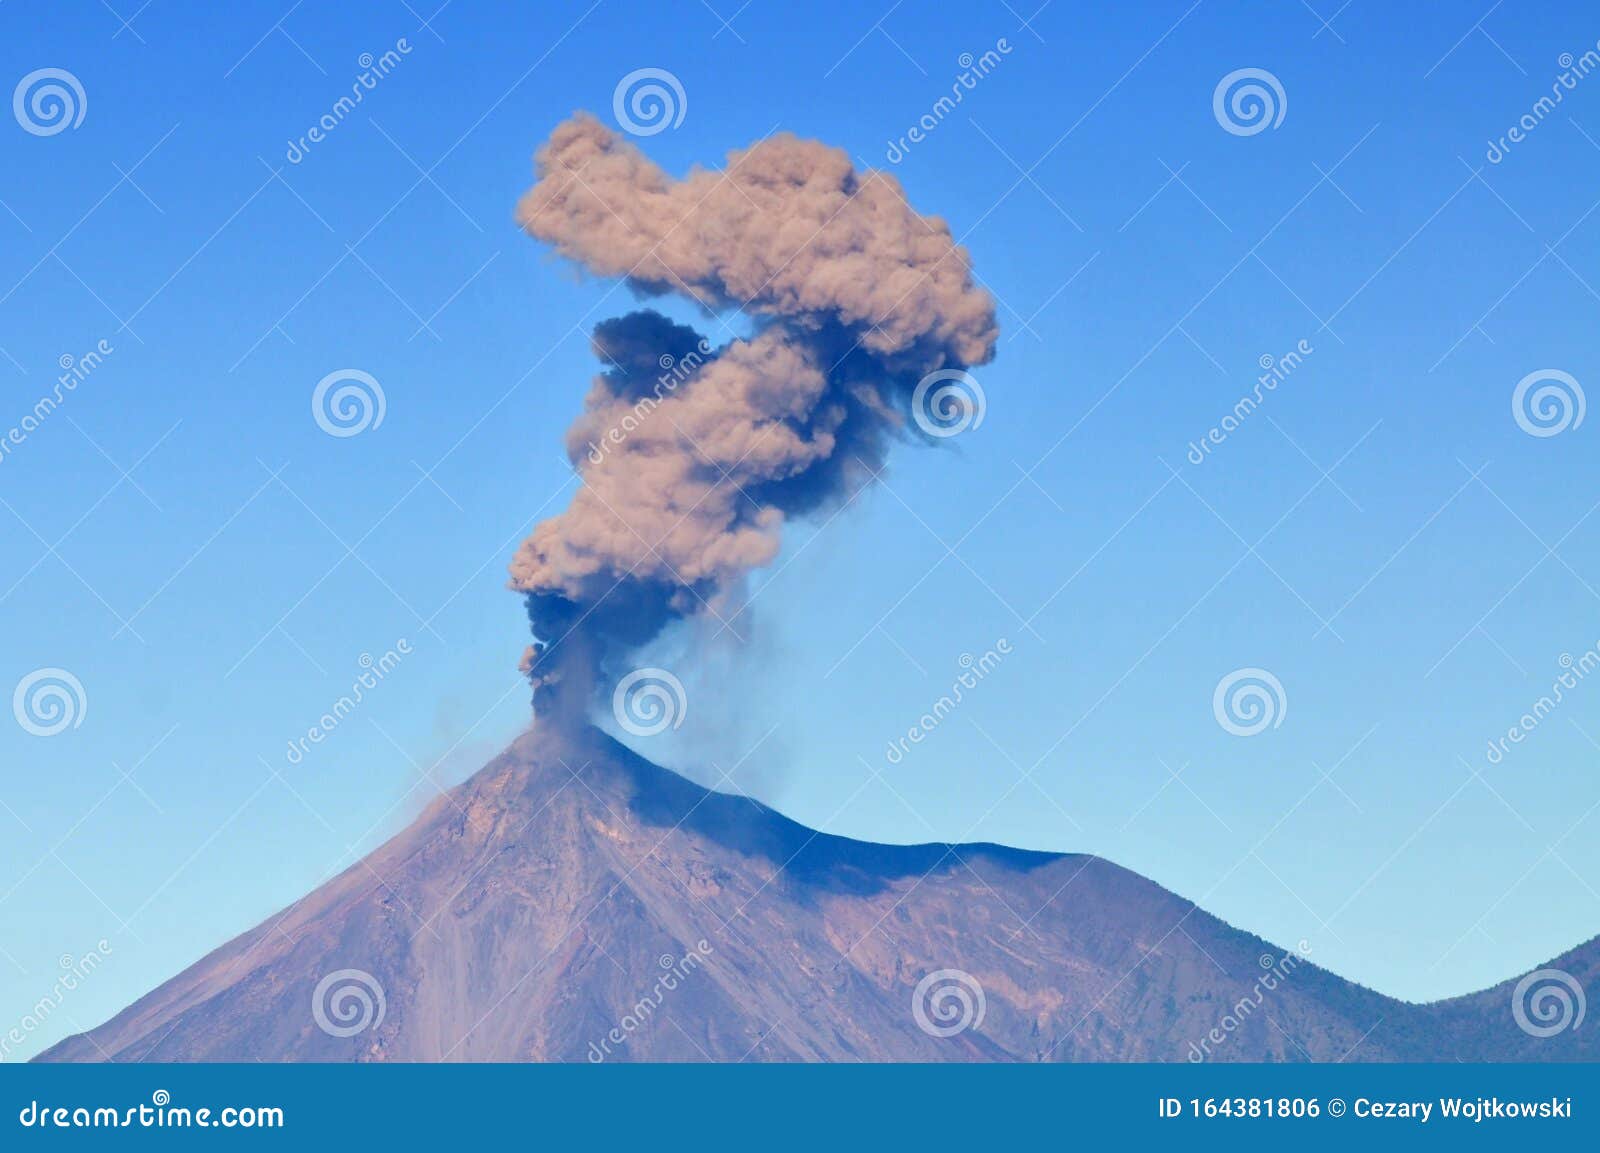 guatemala, volcan de fuego, active stratovolcano